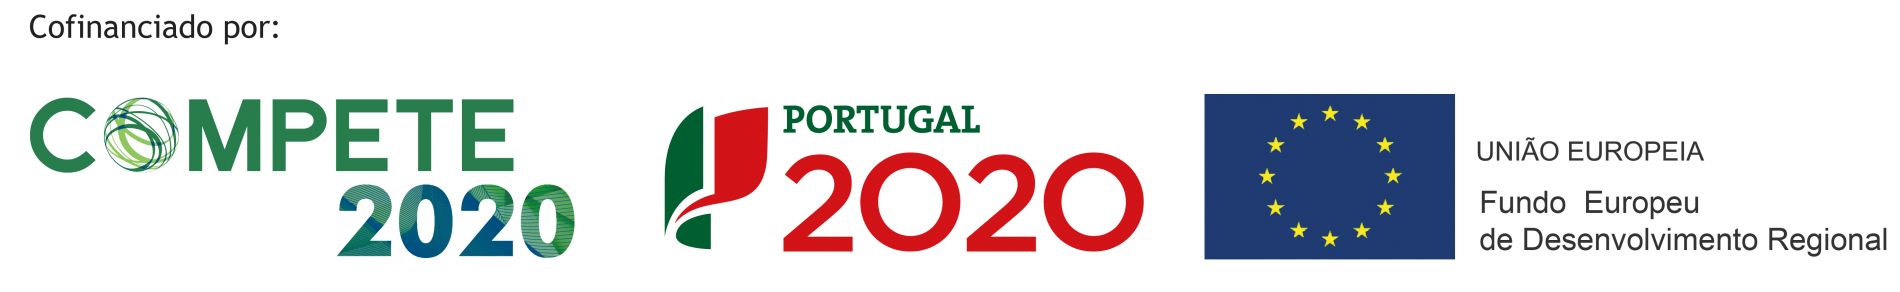 compete2020-portugal2020